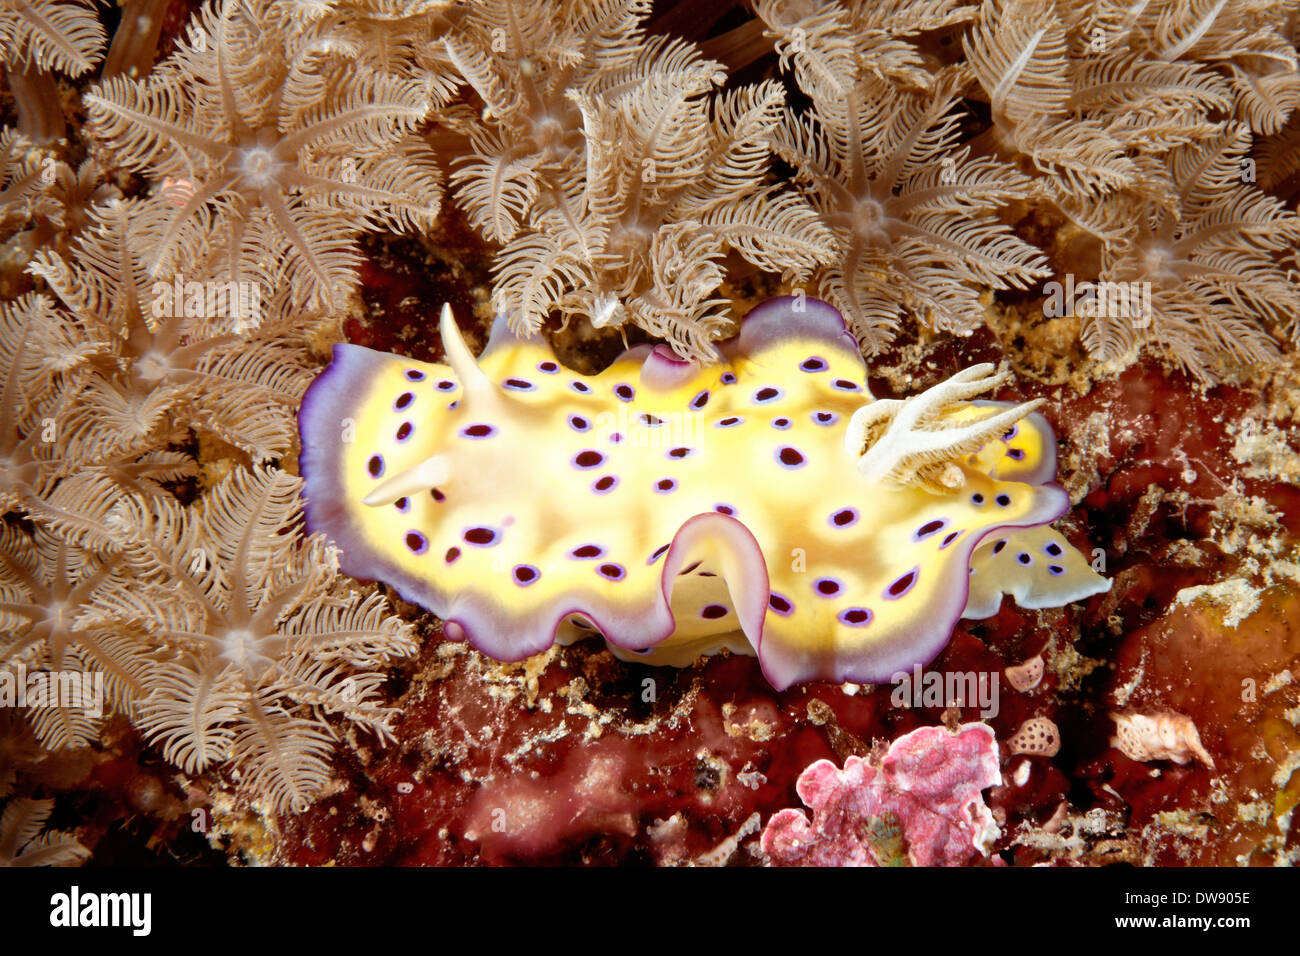 Nudibranch sea slug, Chromodoris kuniei on the reef with soft corals. Stock Photo